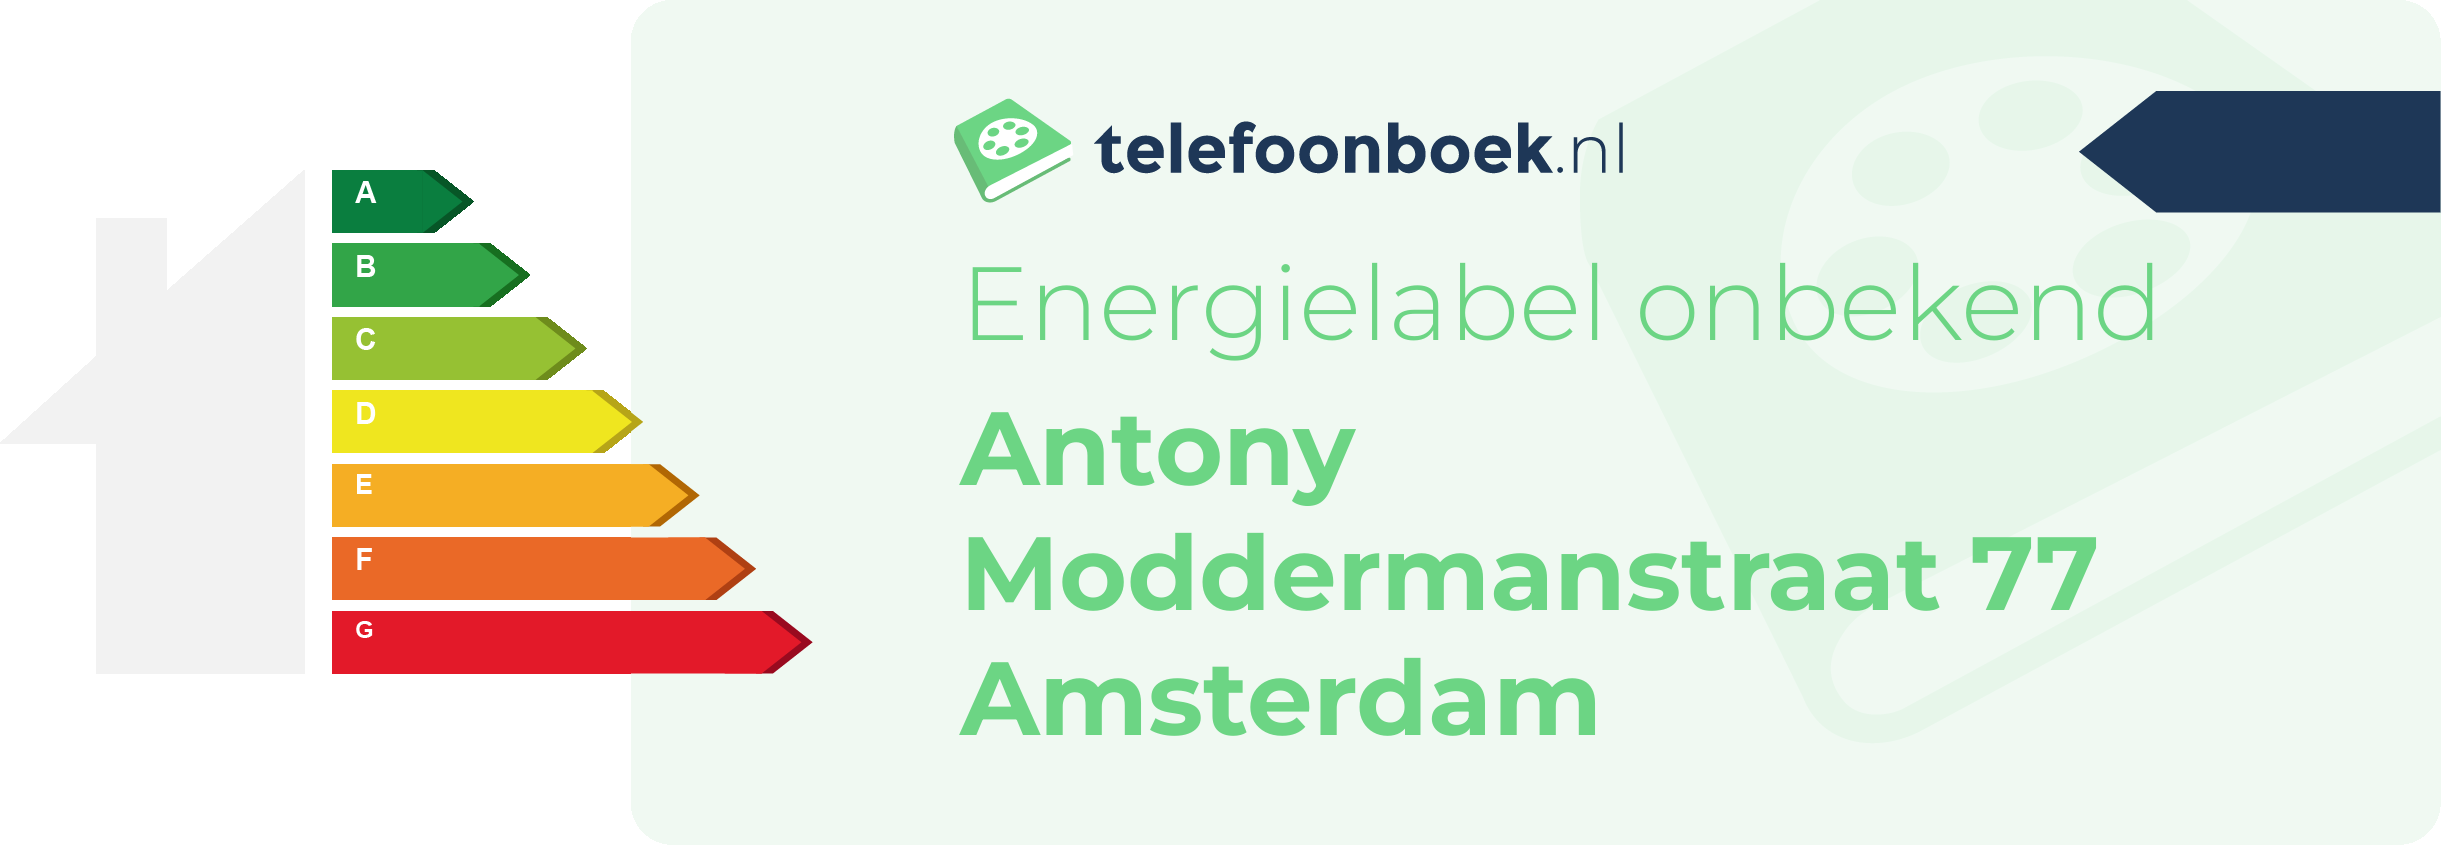 Energielabel Antony Moddermanstraat 77 Amsterdam